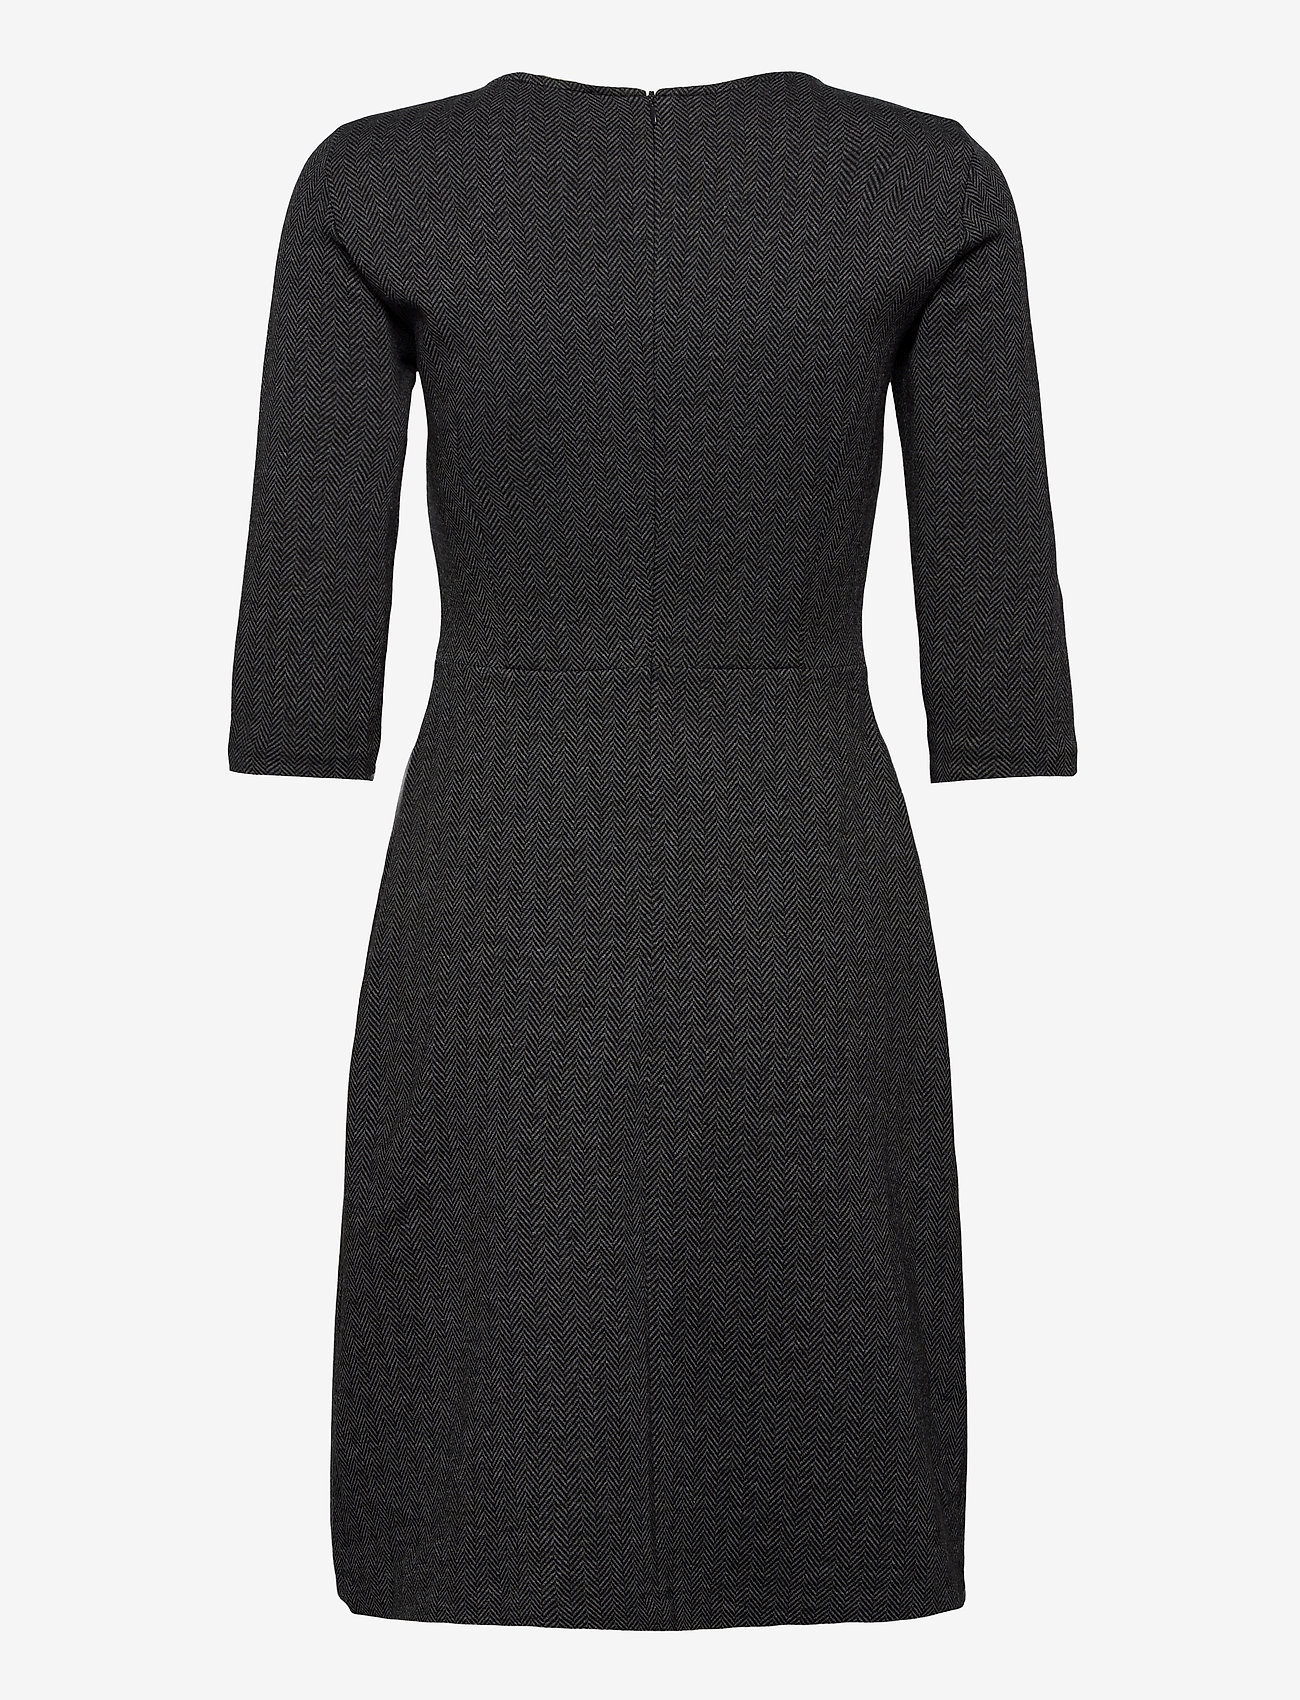 Esprit Casual Dresses Woven - Midi dresses | Boozt.com